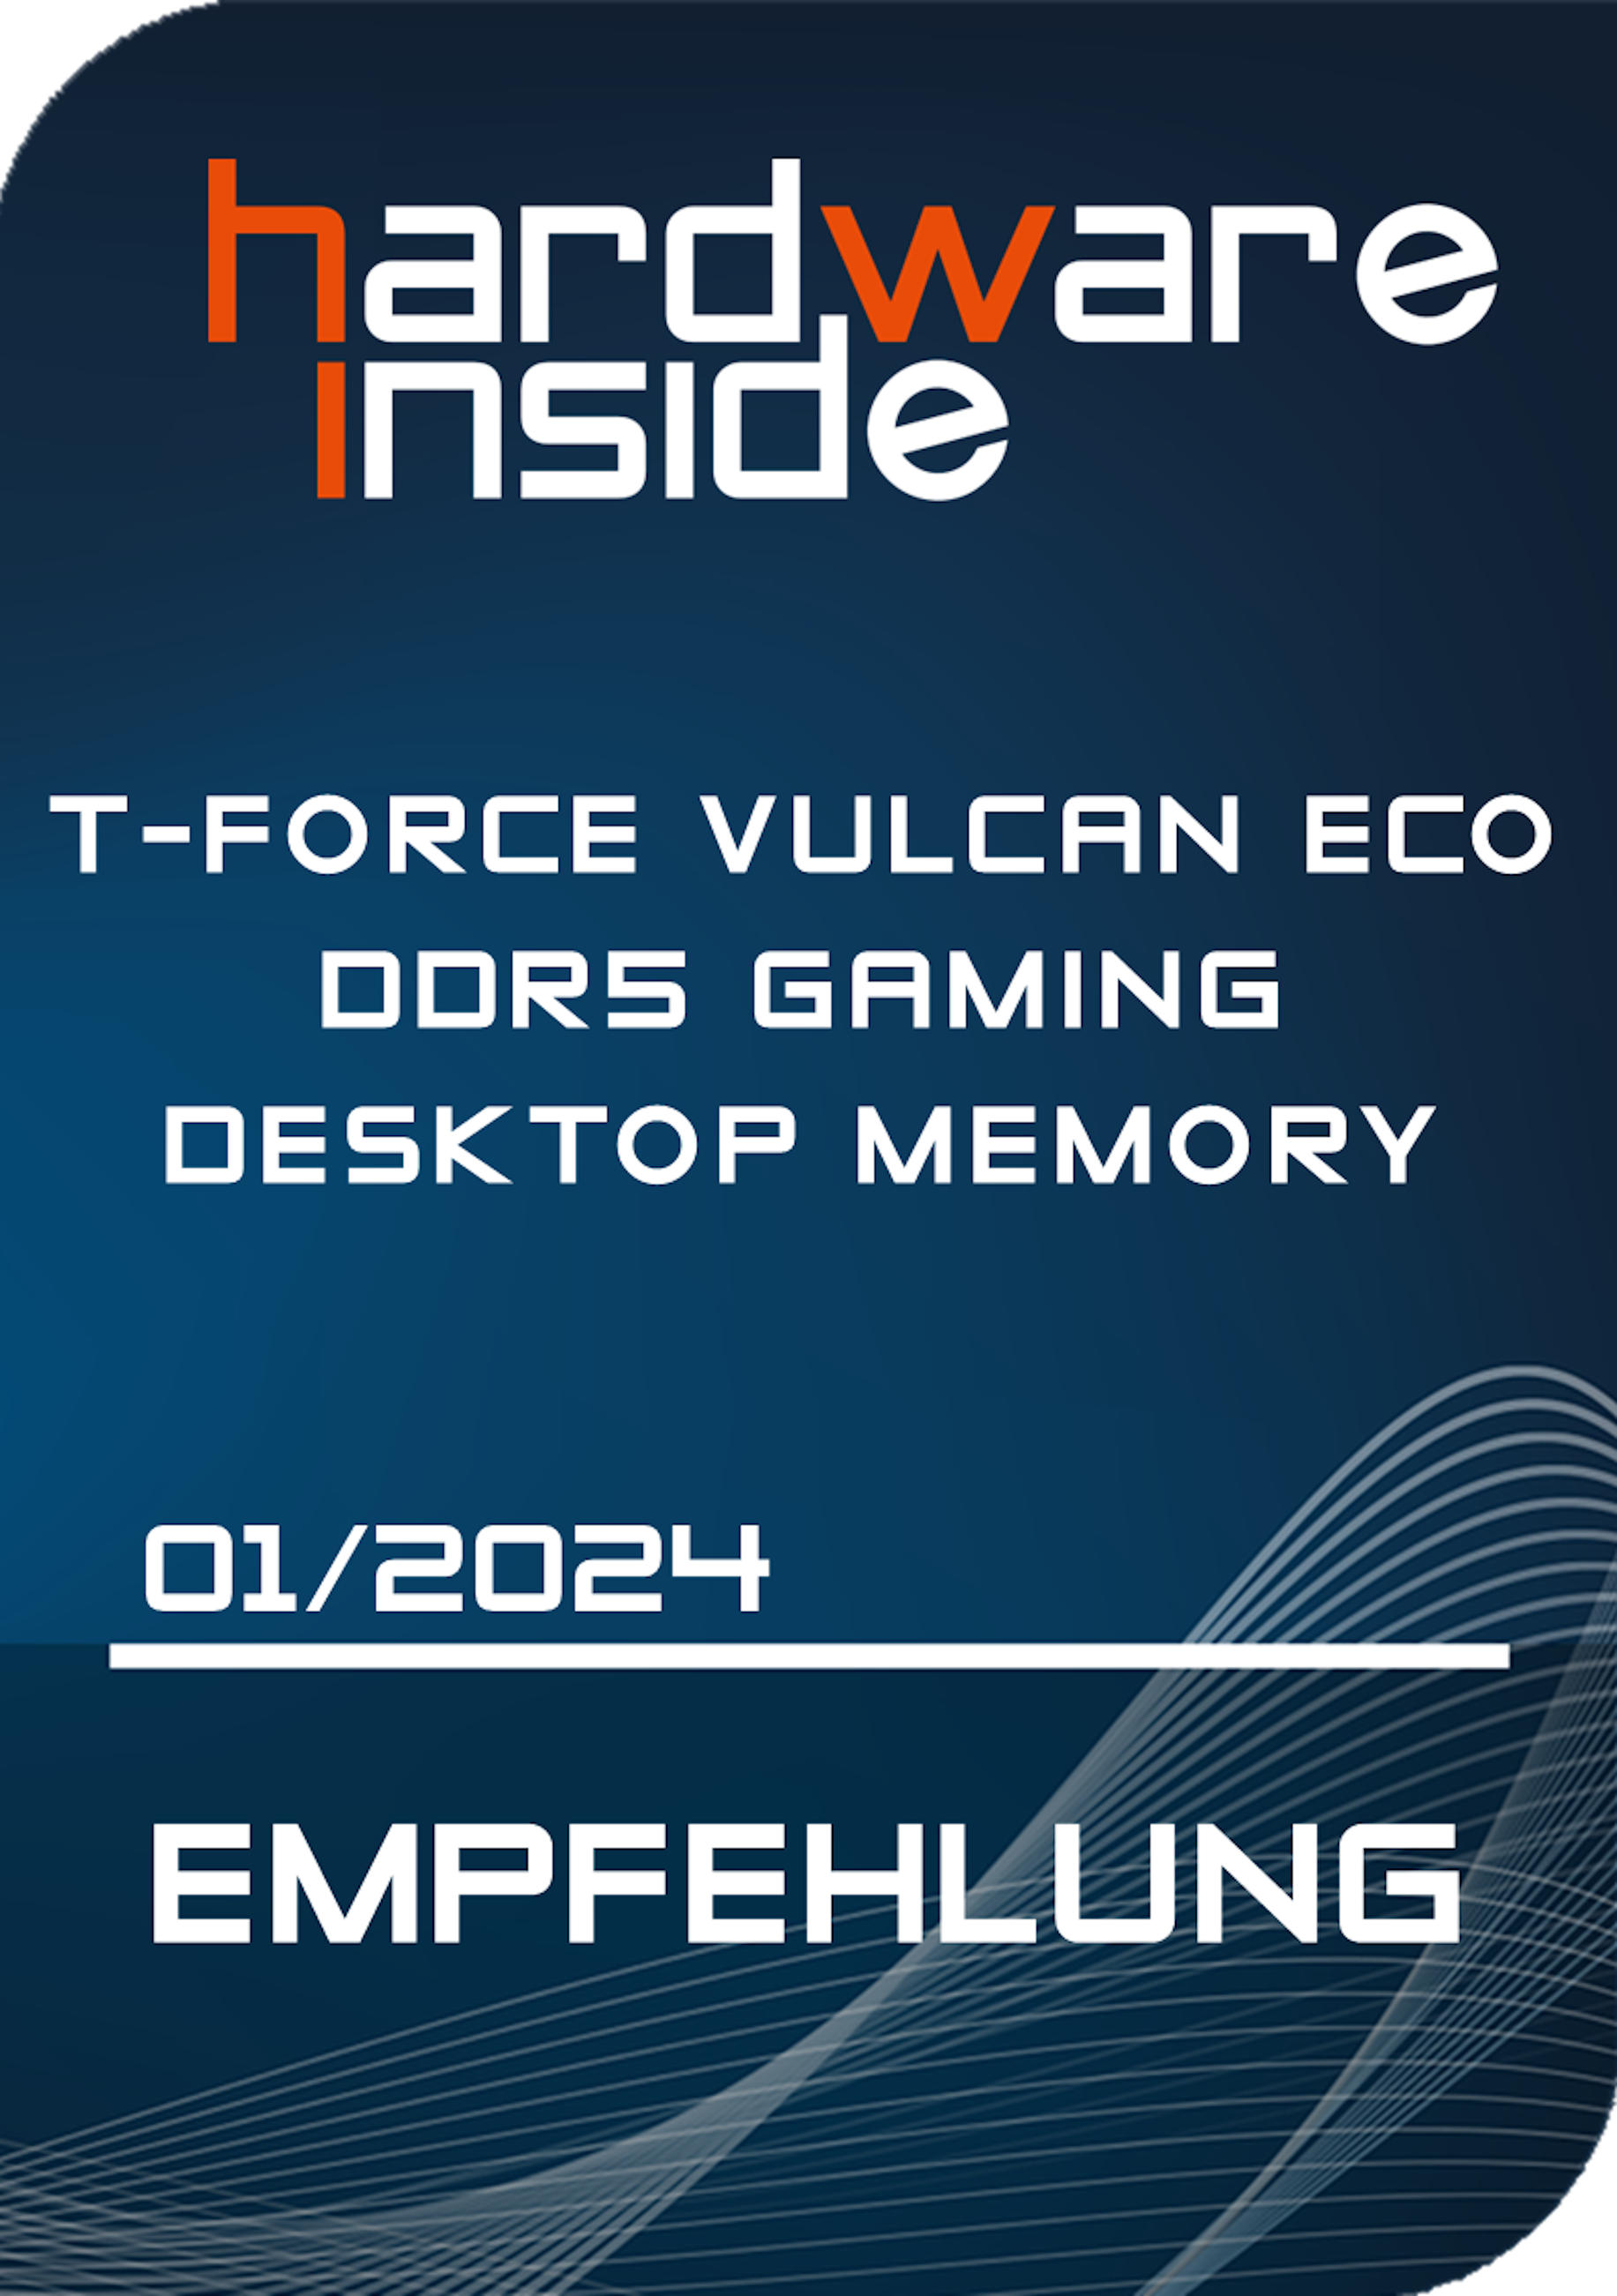 T-FORCE VULCAN ECO DDR5 Gaming Desktop Memory_HiRes_AWARD.PNG